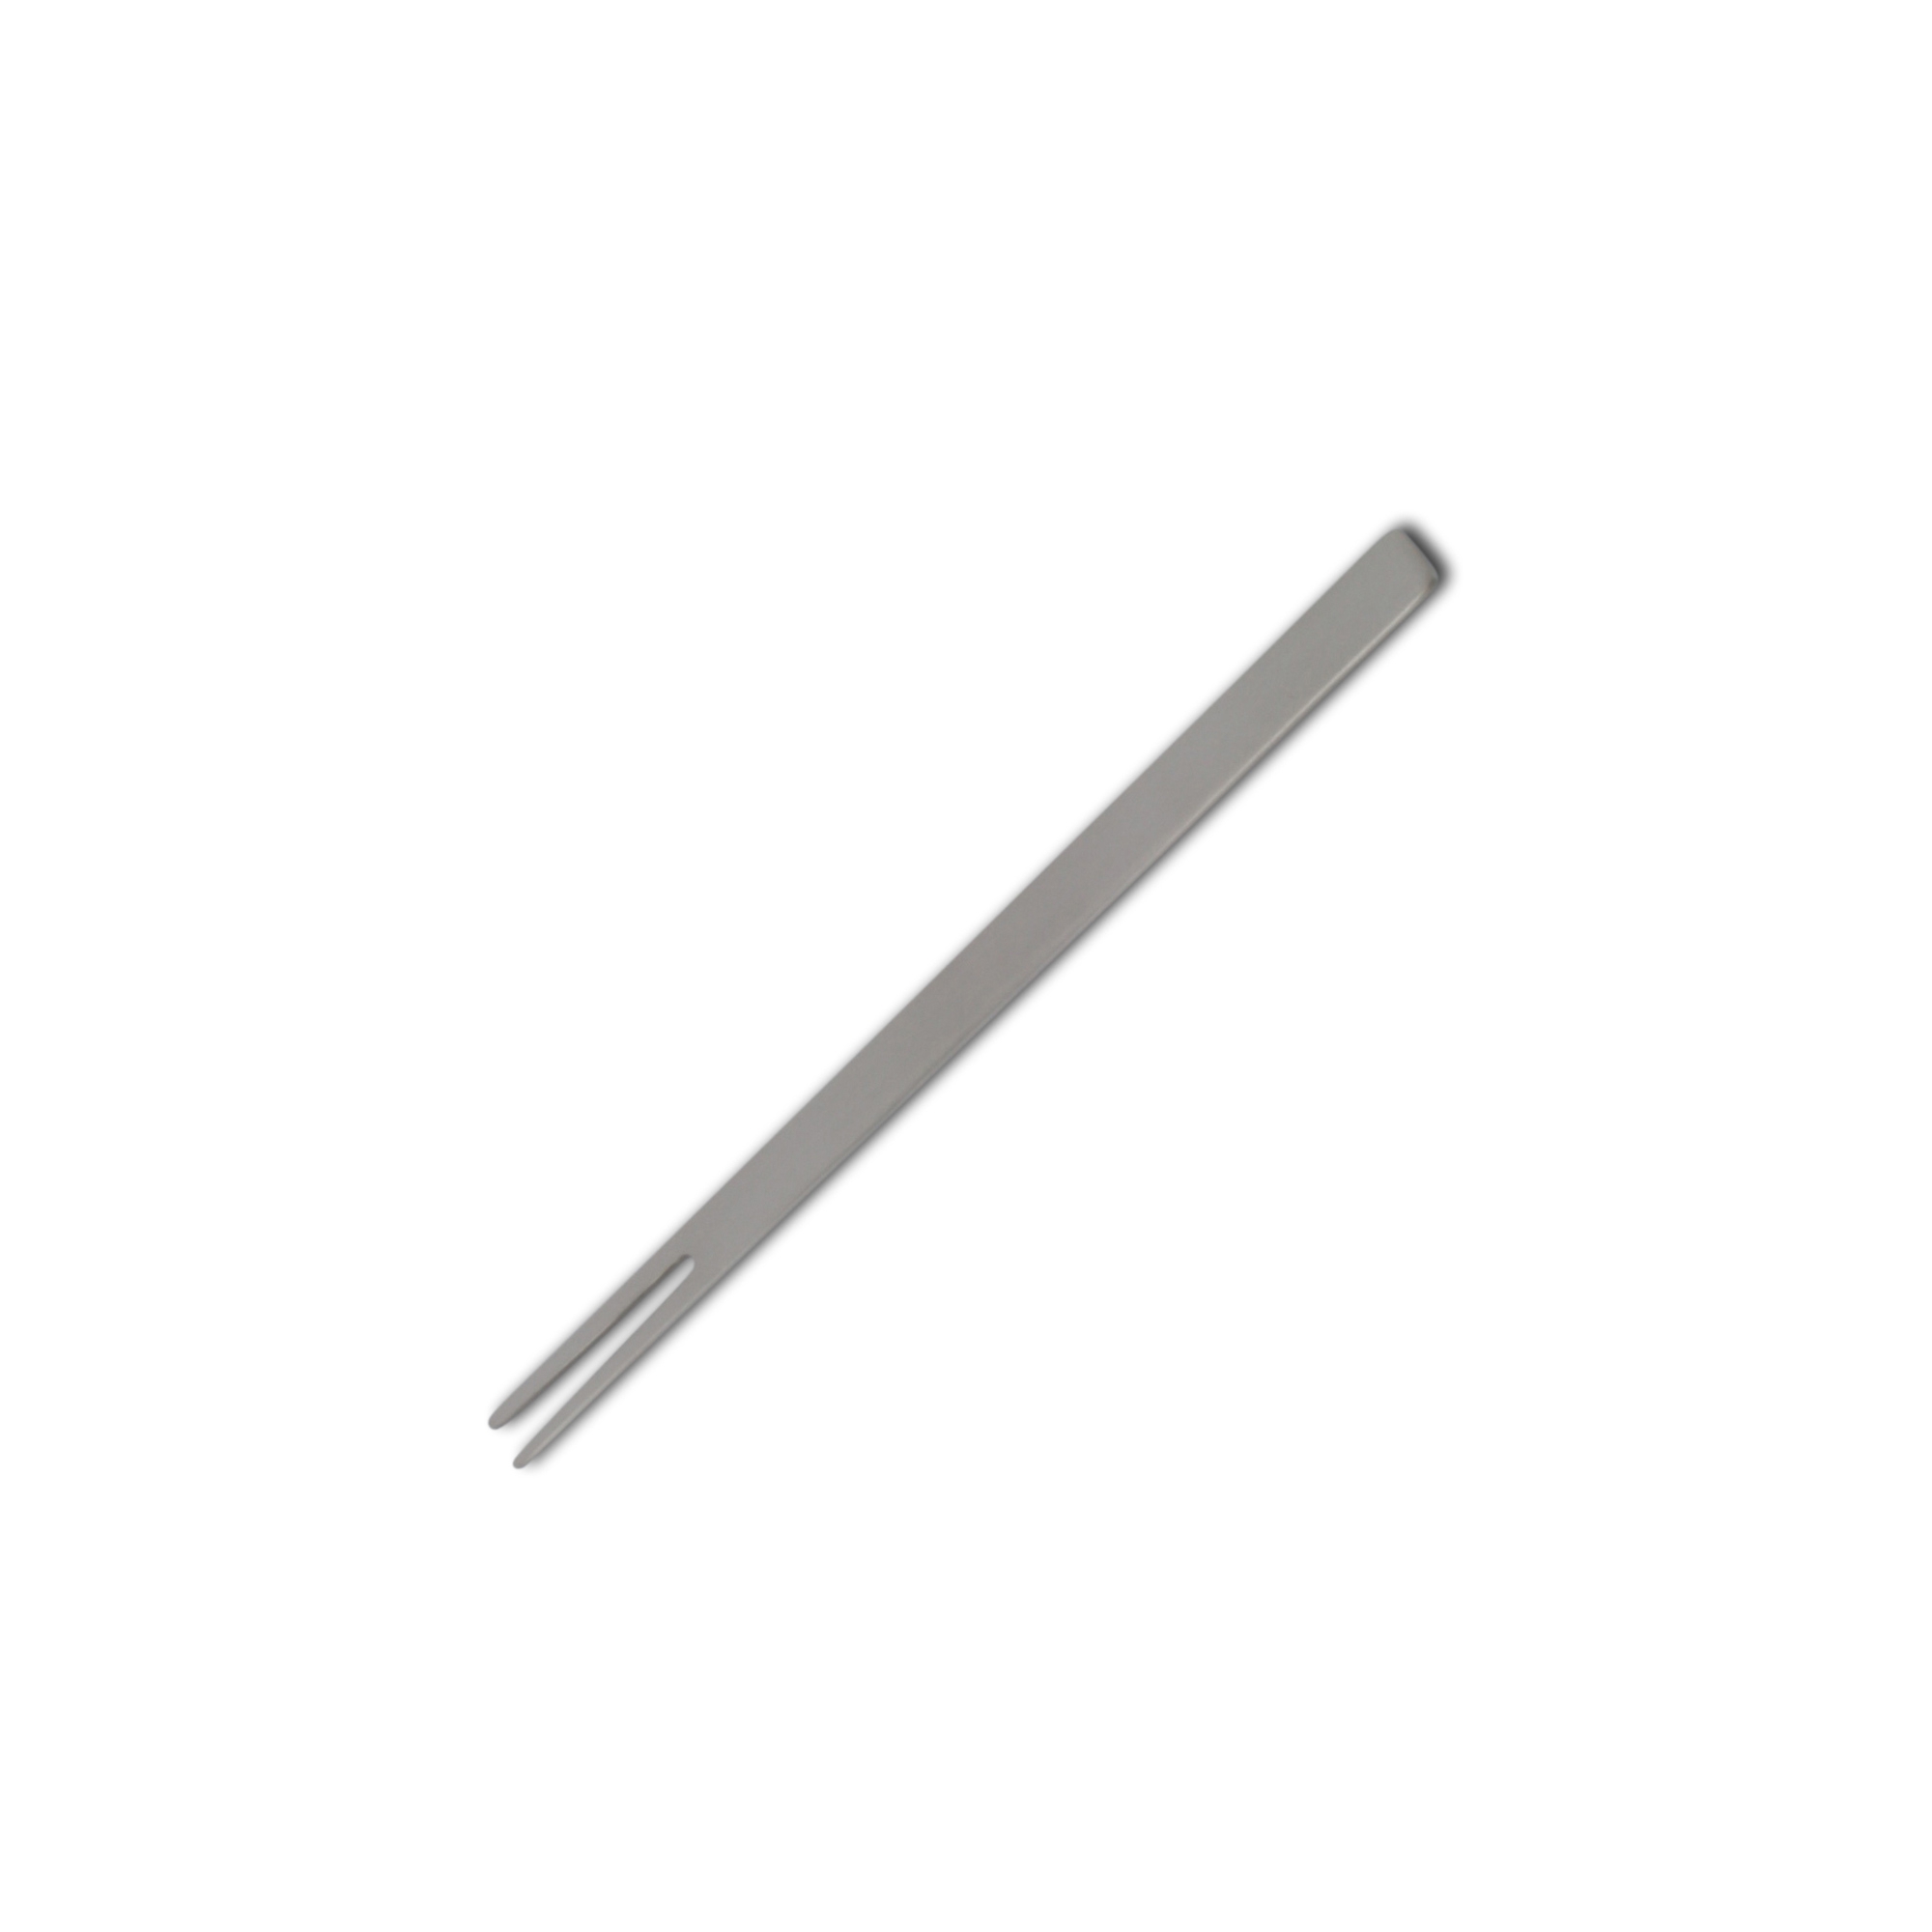 mono-a - canape fork 13 cm